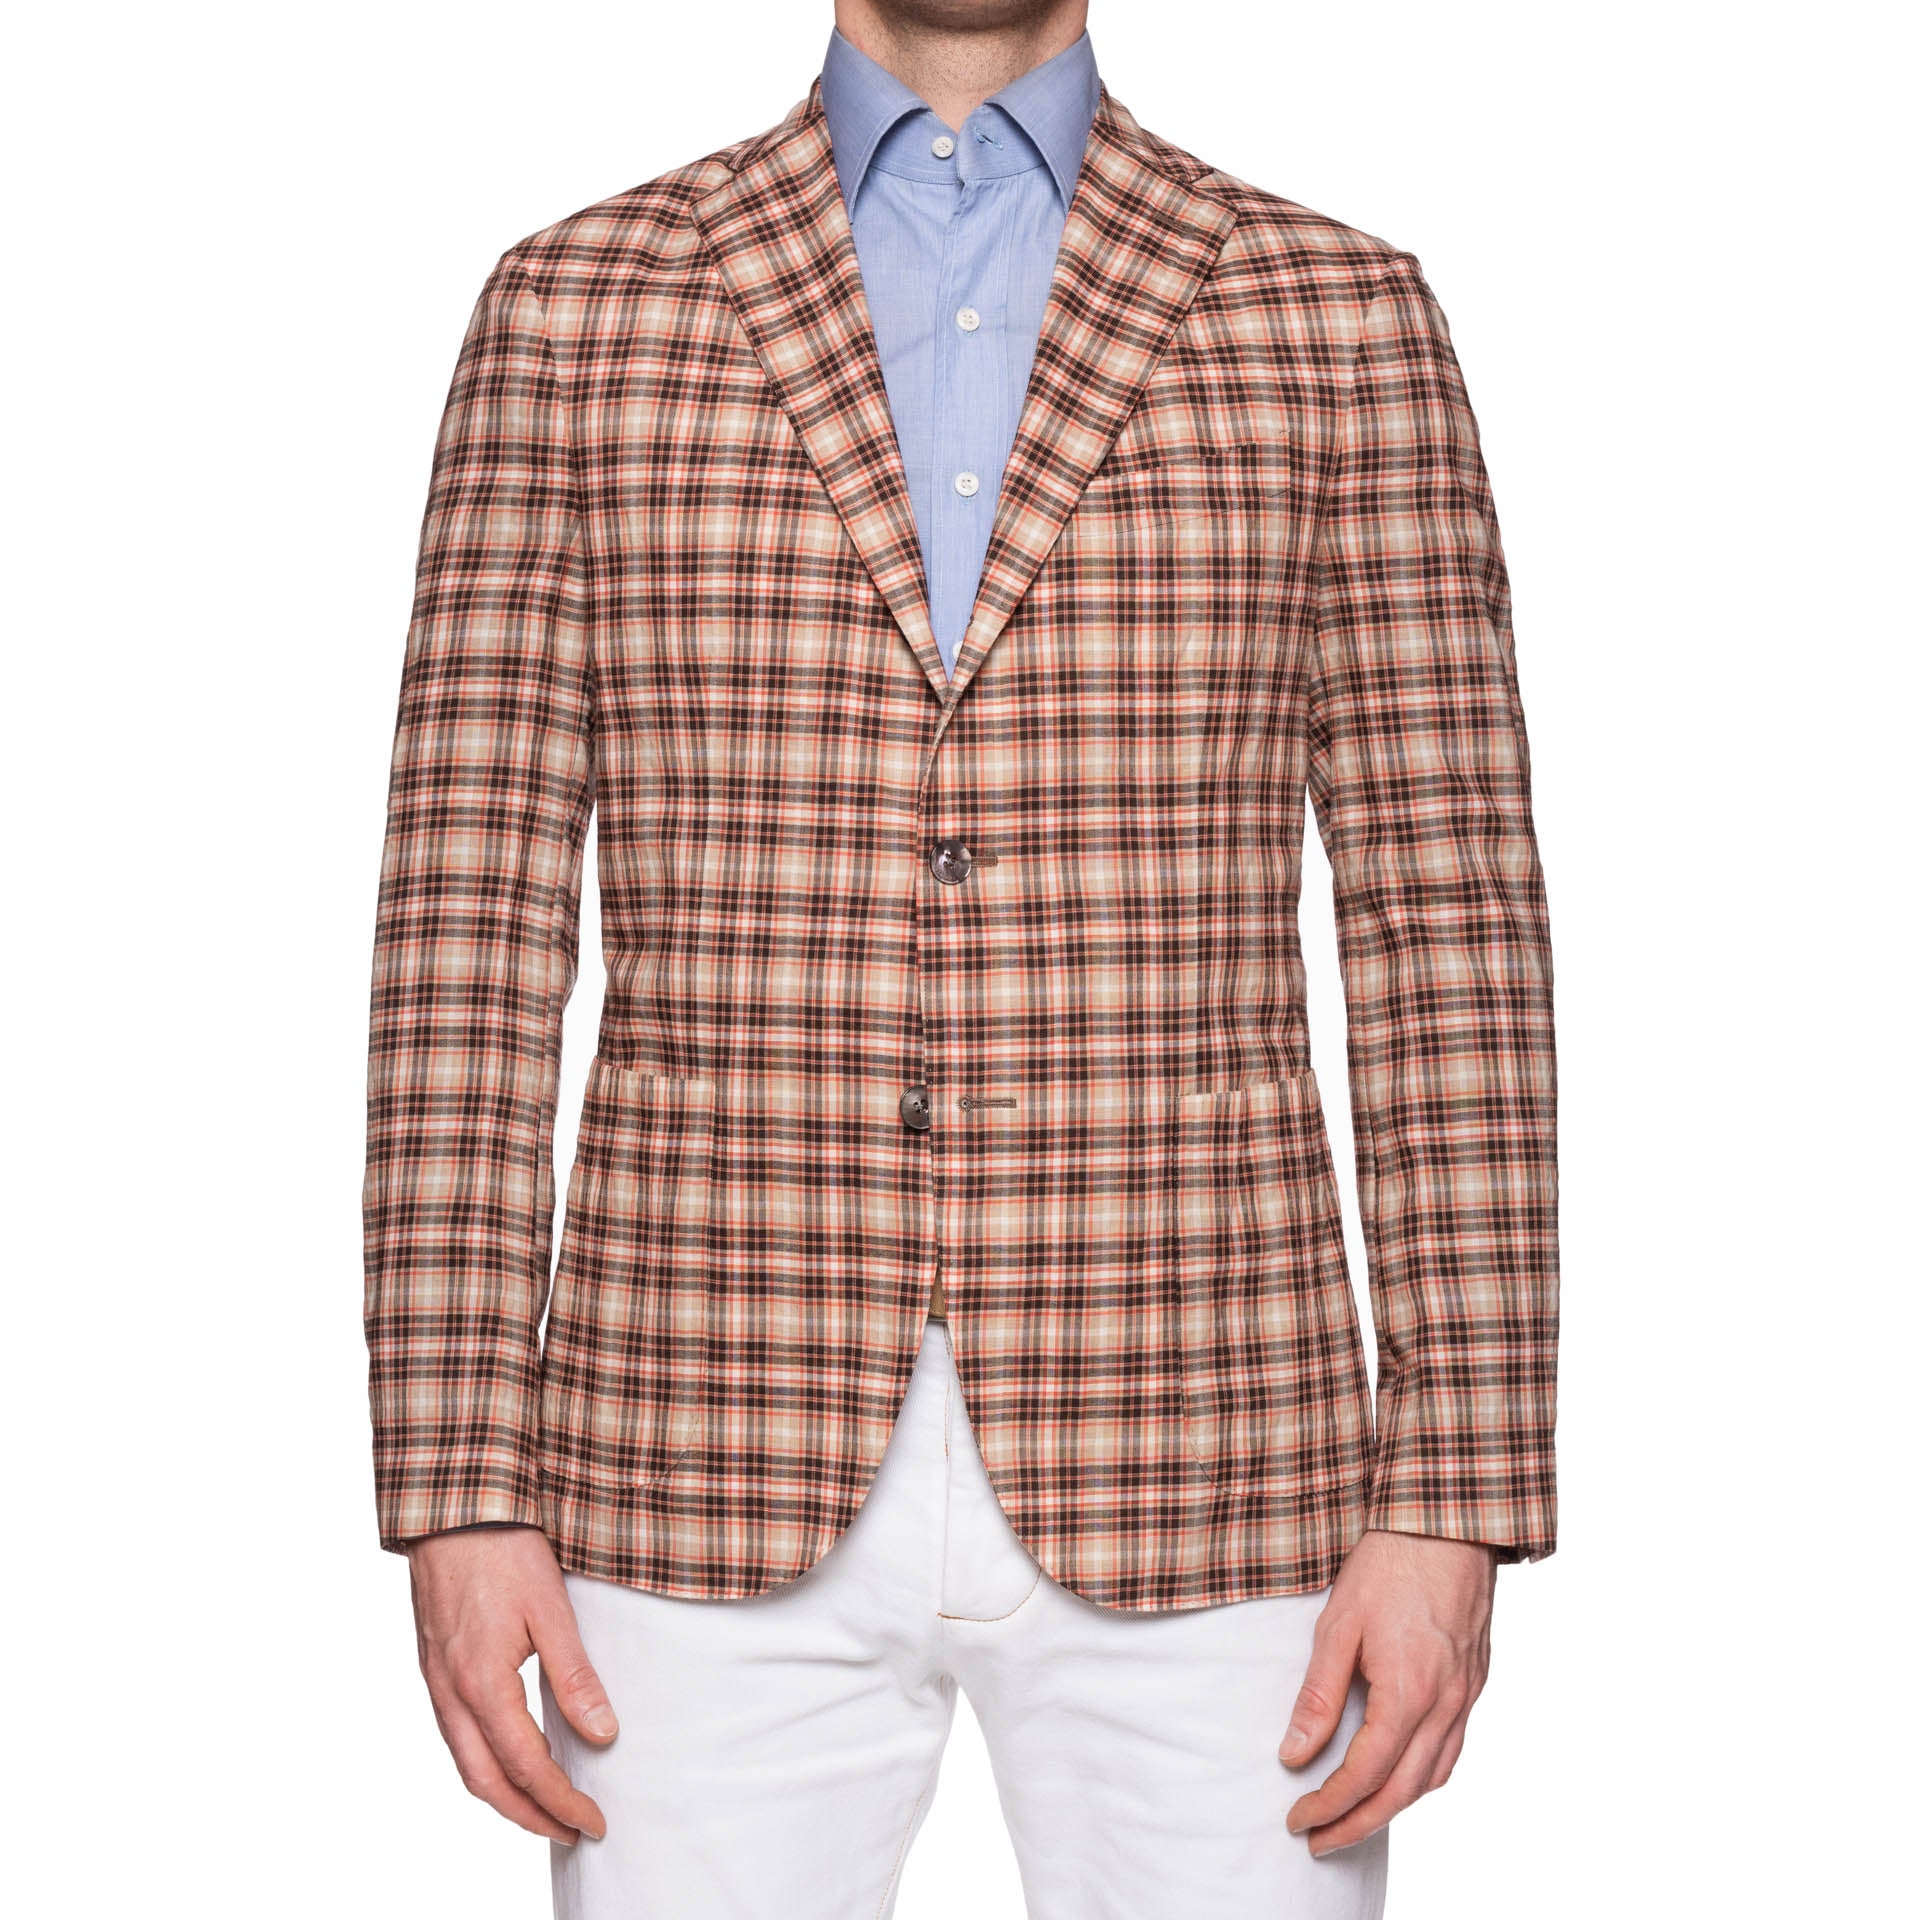 BOGLIOLI Milano "K. Jacket" Multi-Color Plaid Wool Unlined Jacket 48 NEW US 38 BOGLIOLI